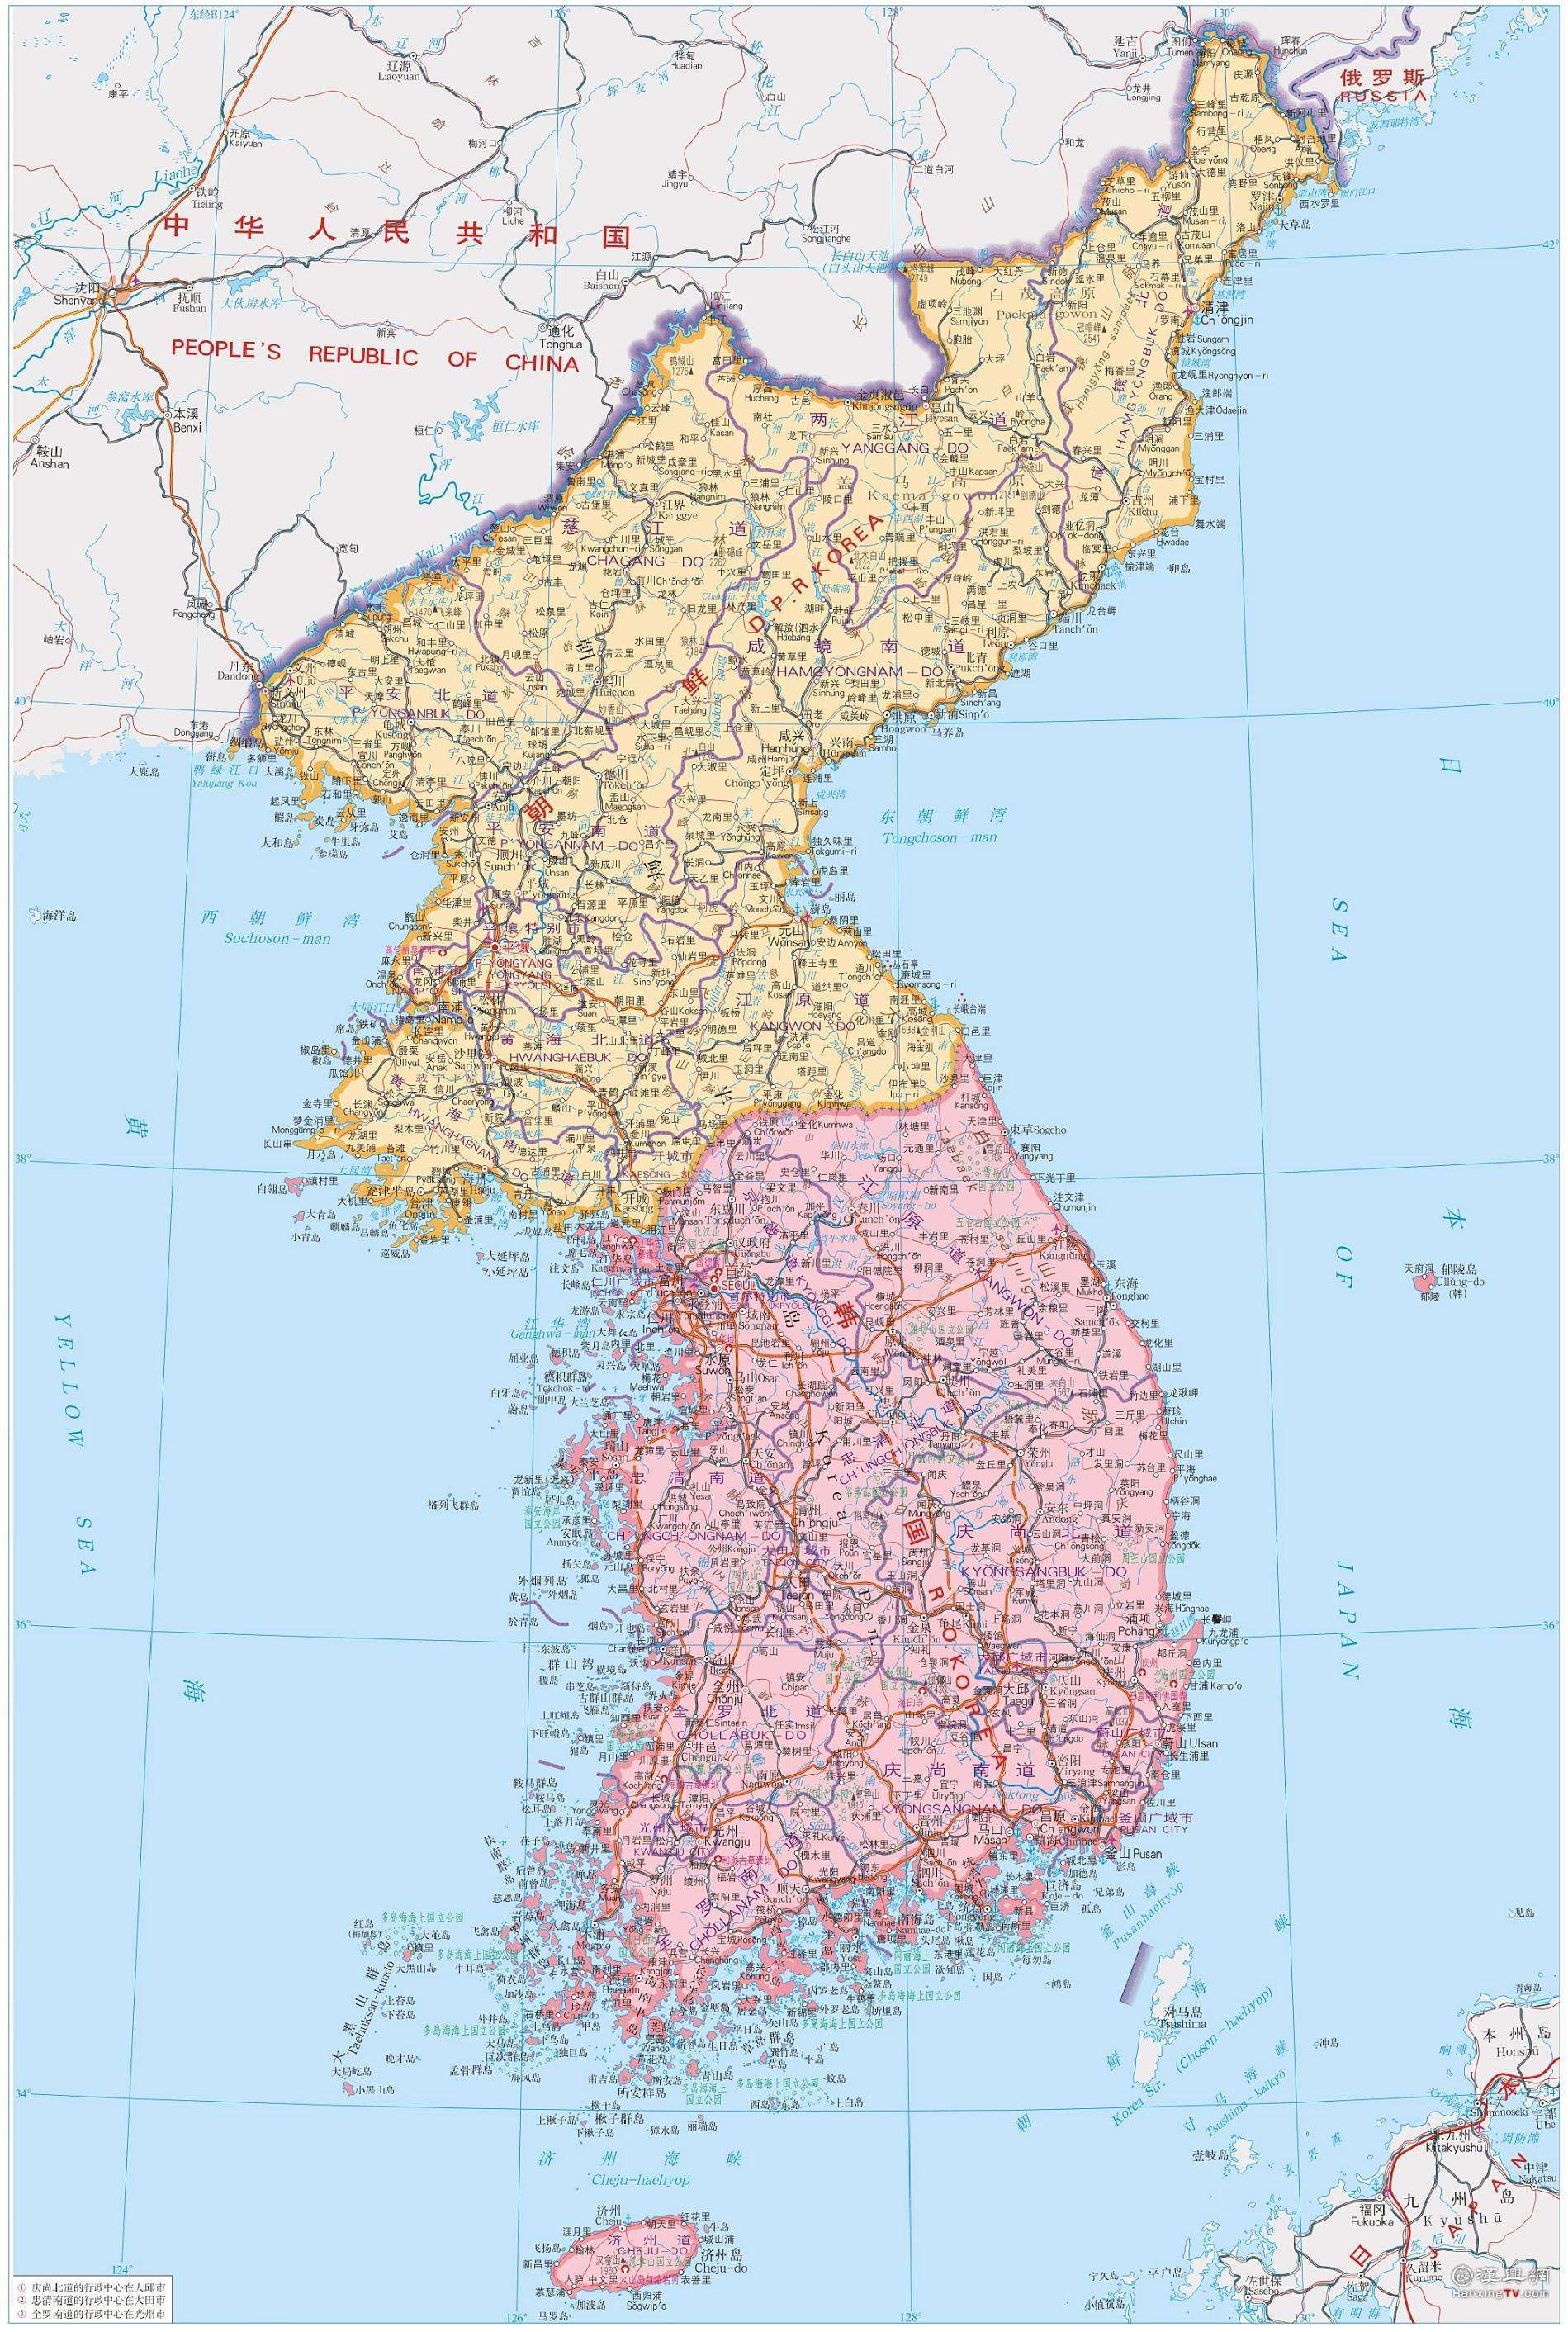 朝韩分裂(电影)1945年,日本投降后,朝鲜半岛以北纬38度线为界,分别由